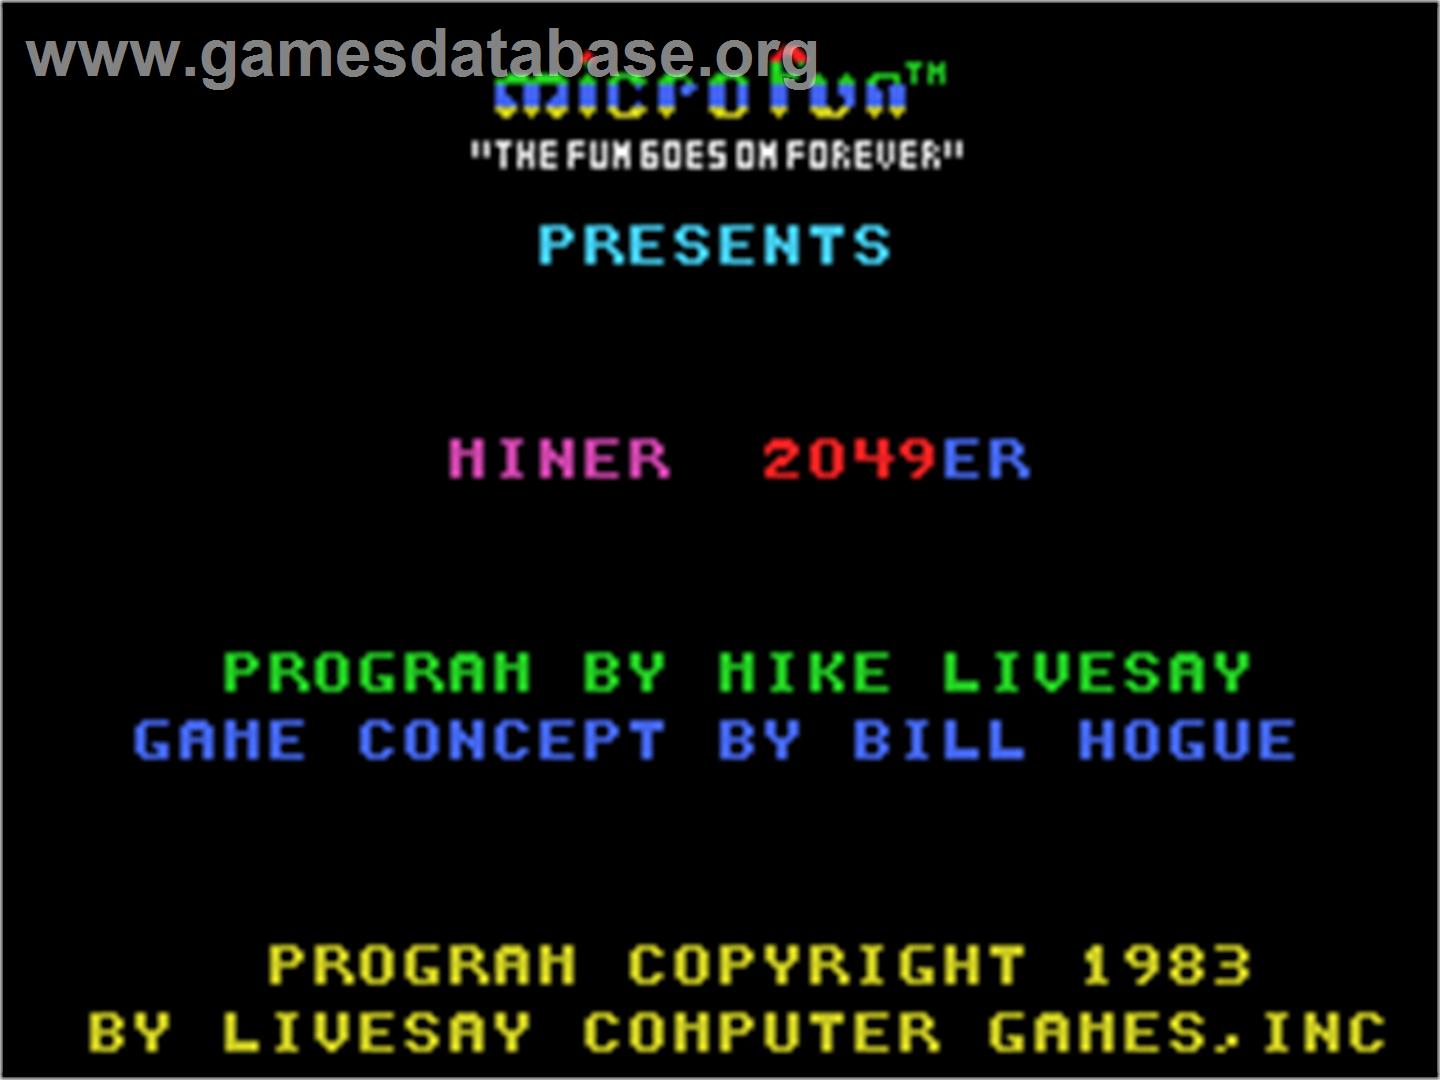 Miner 2049er - Coleco Vision - Artwork - Title Screen